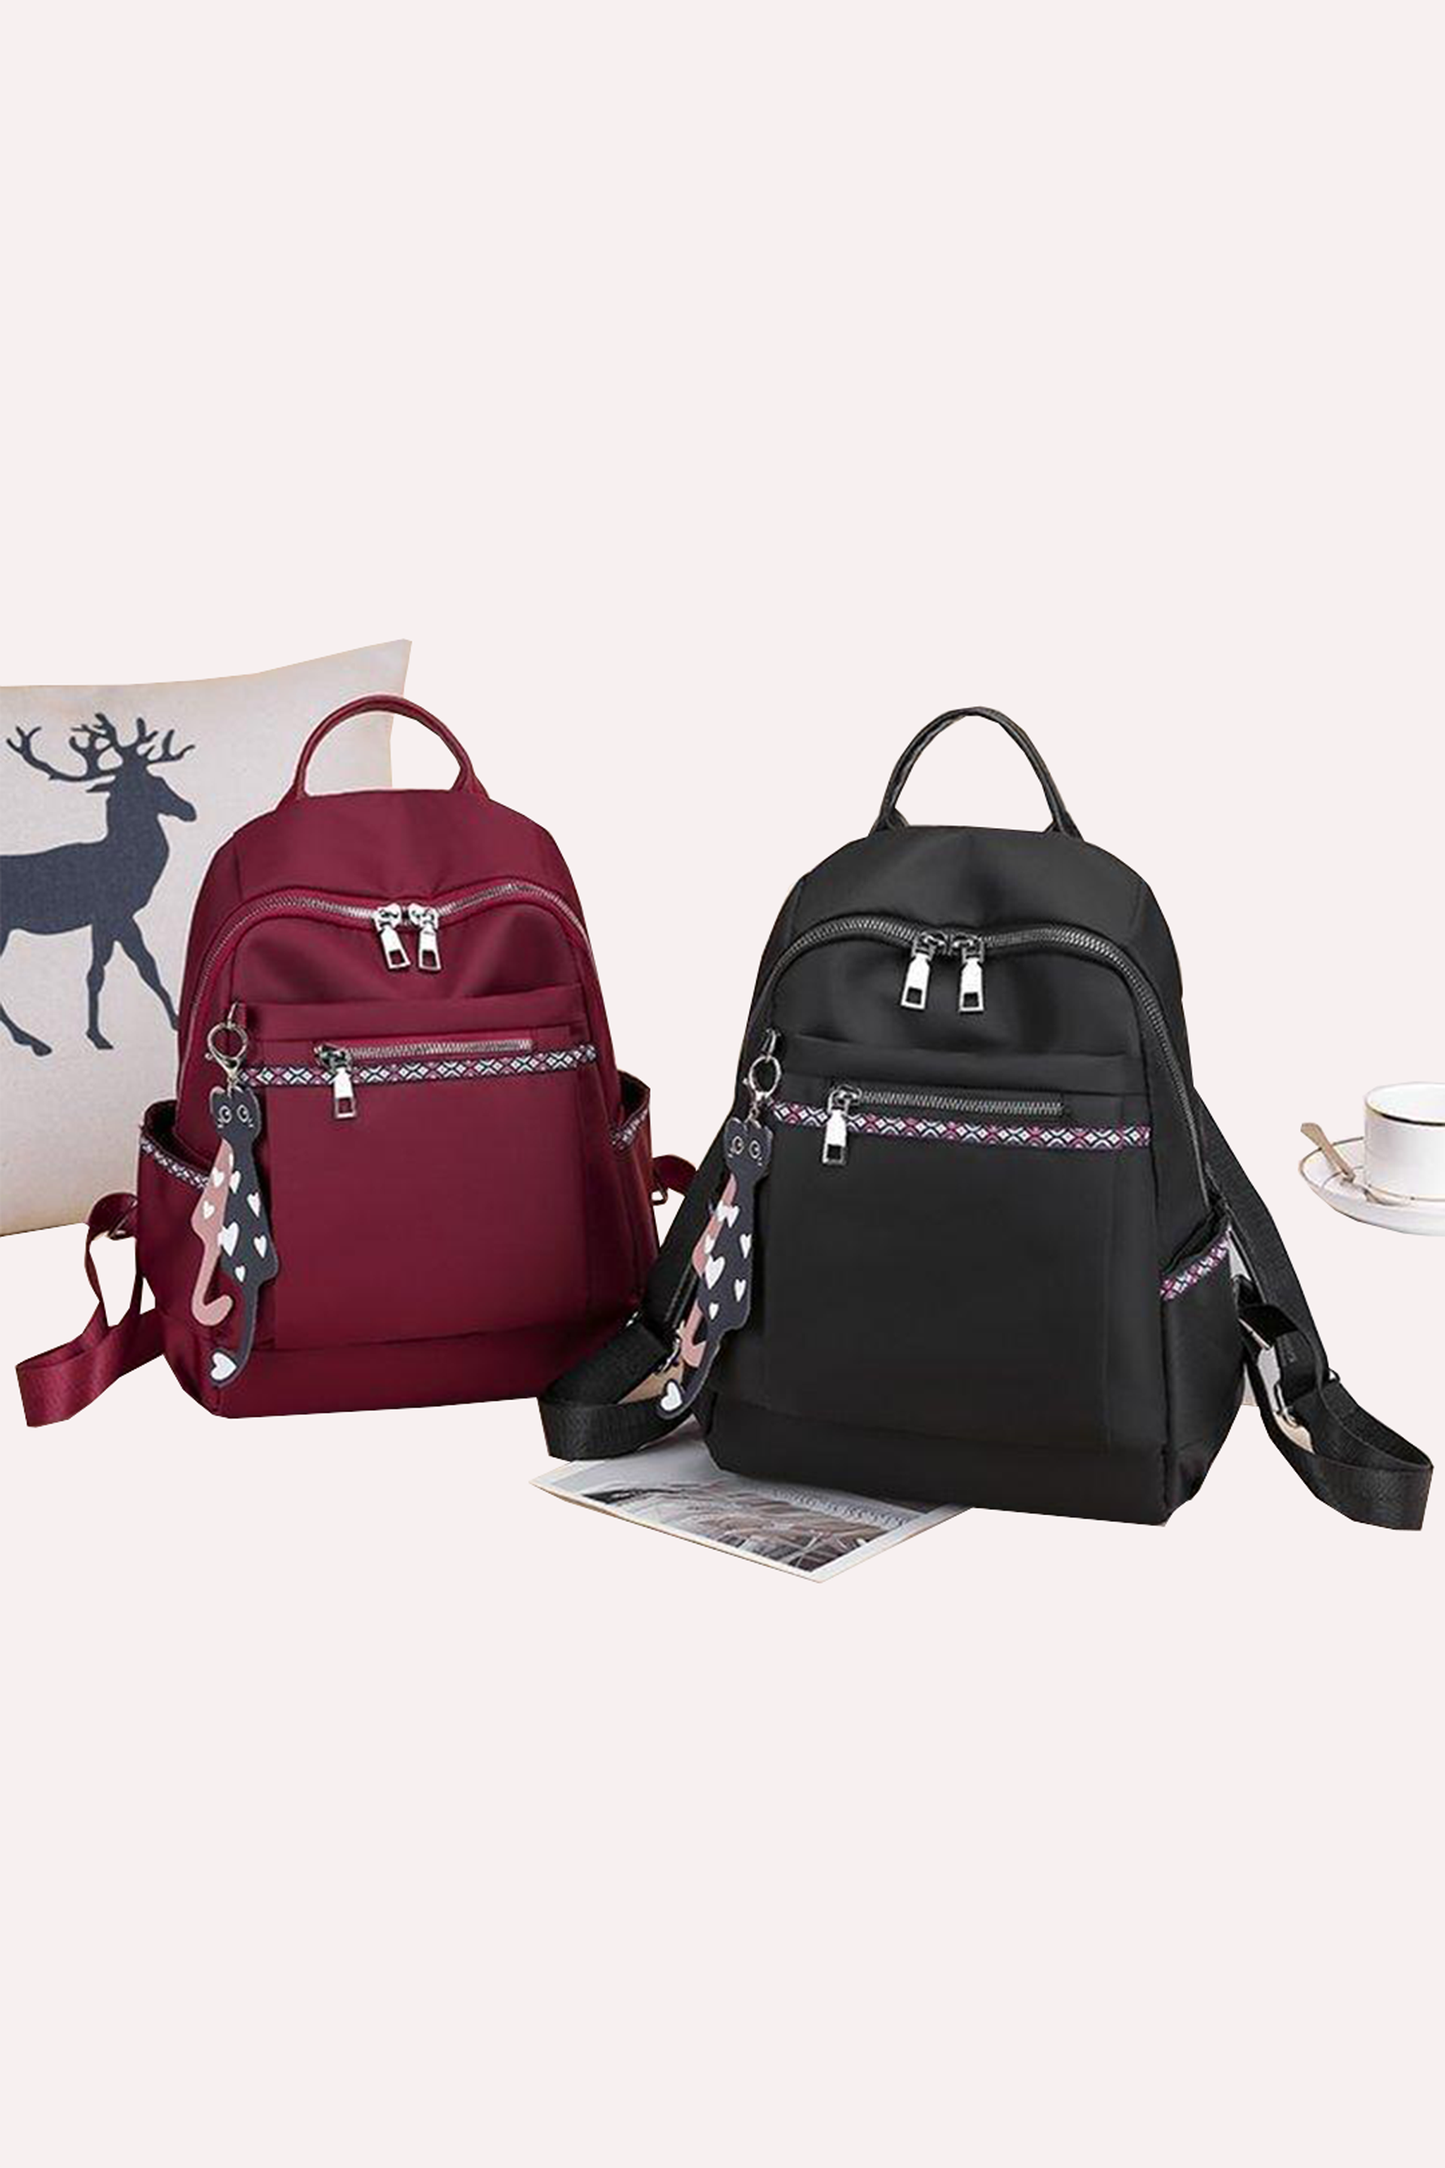 Everest - Lightweight Backpacks for Girls